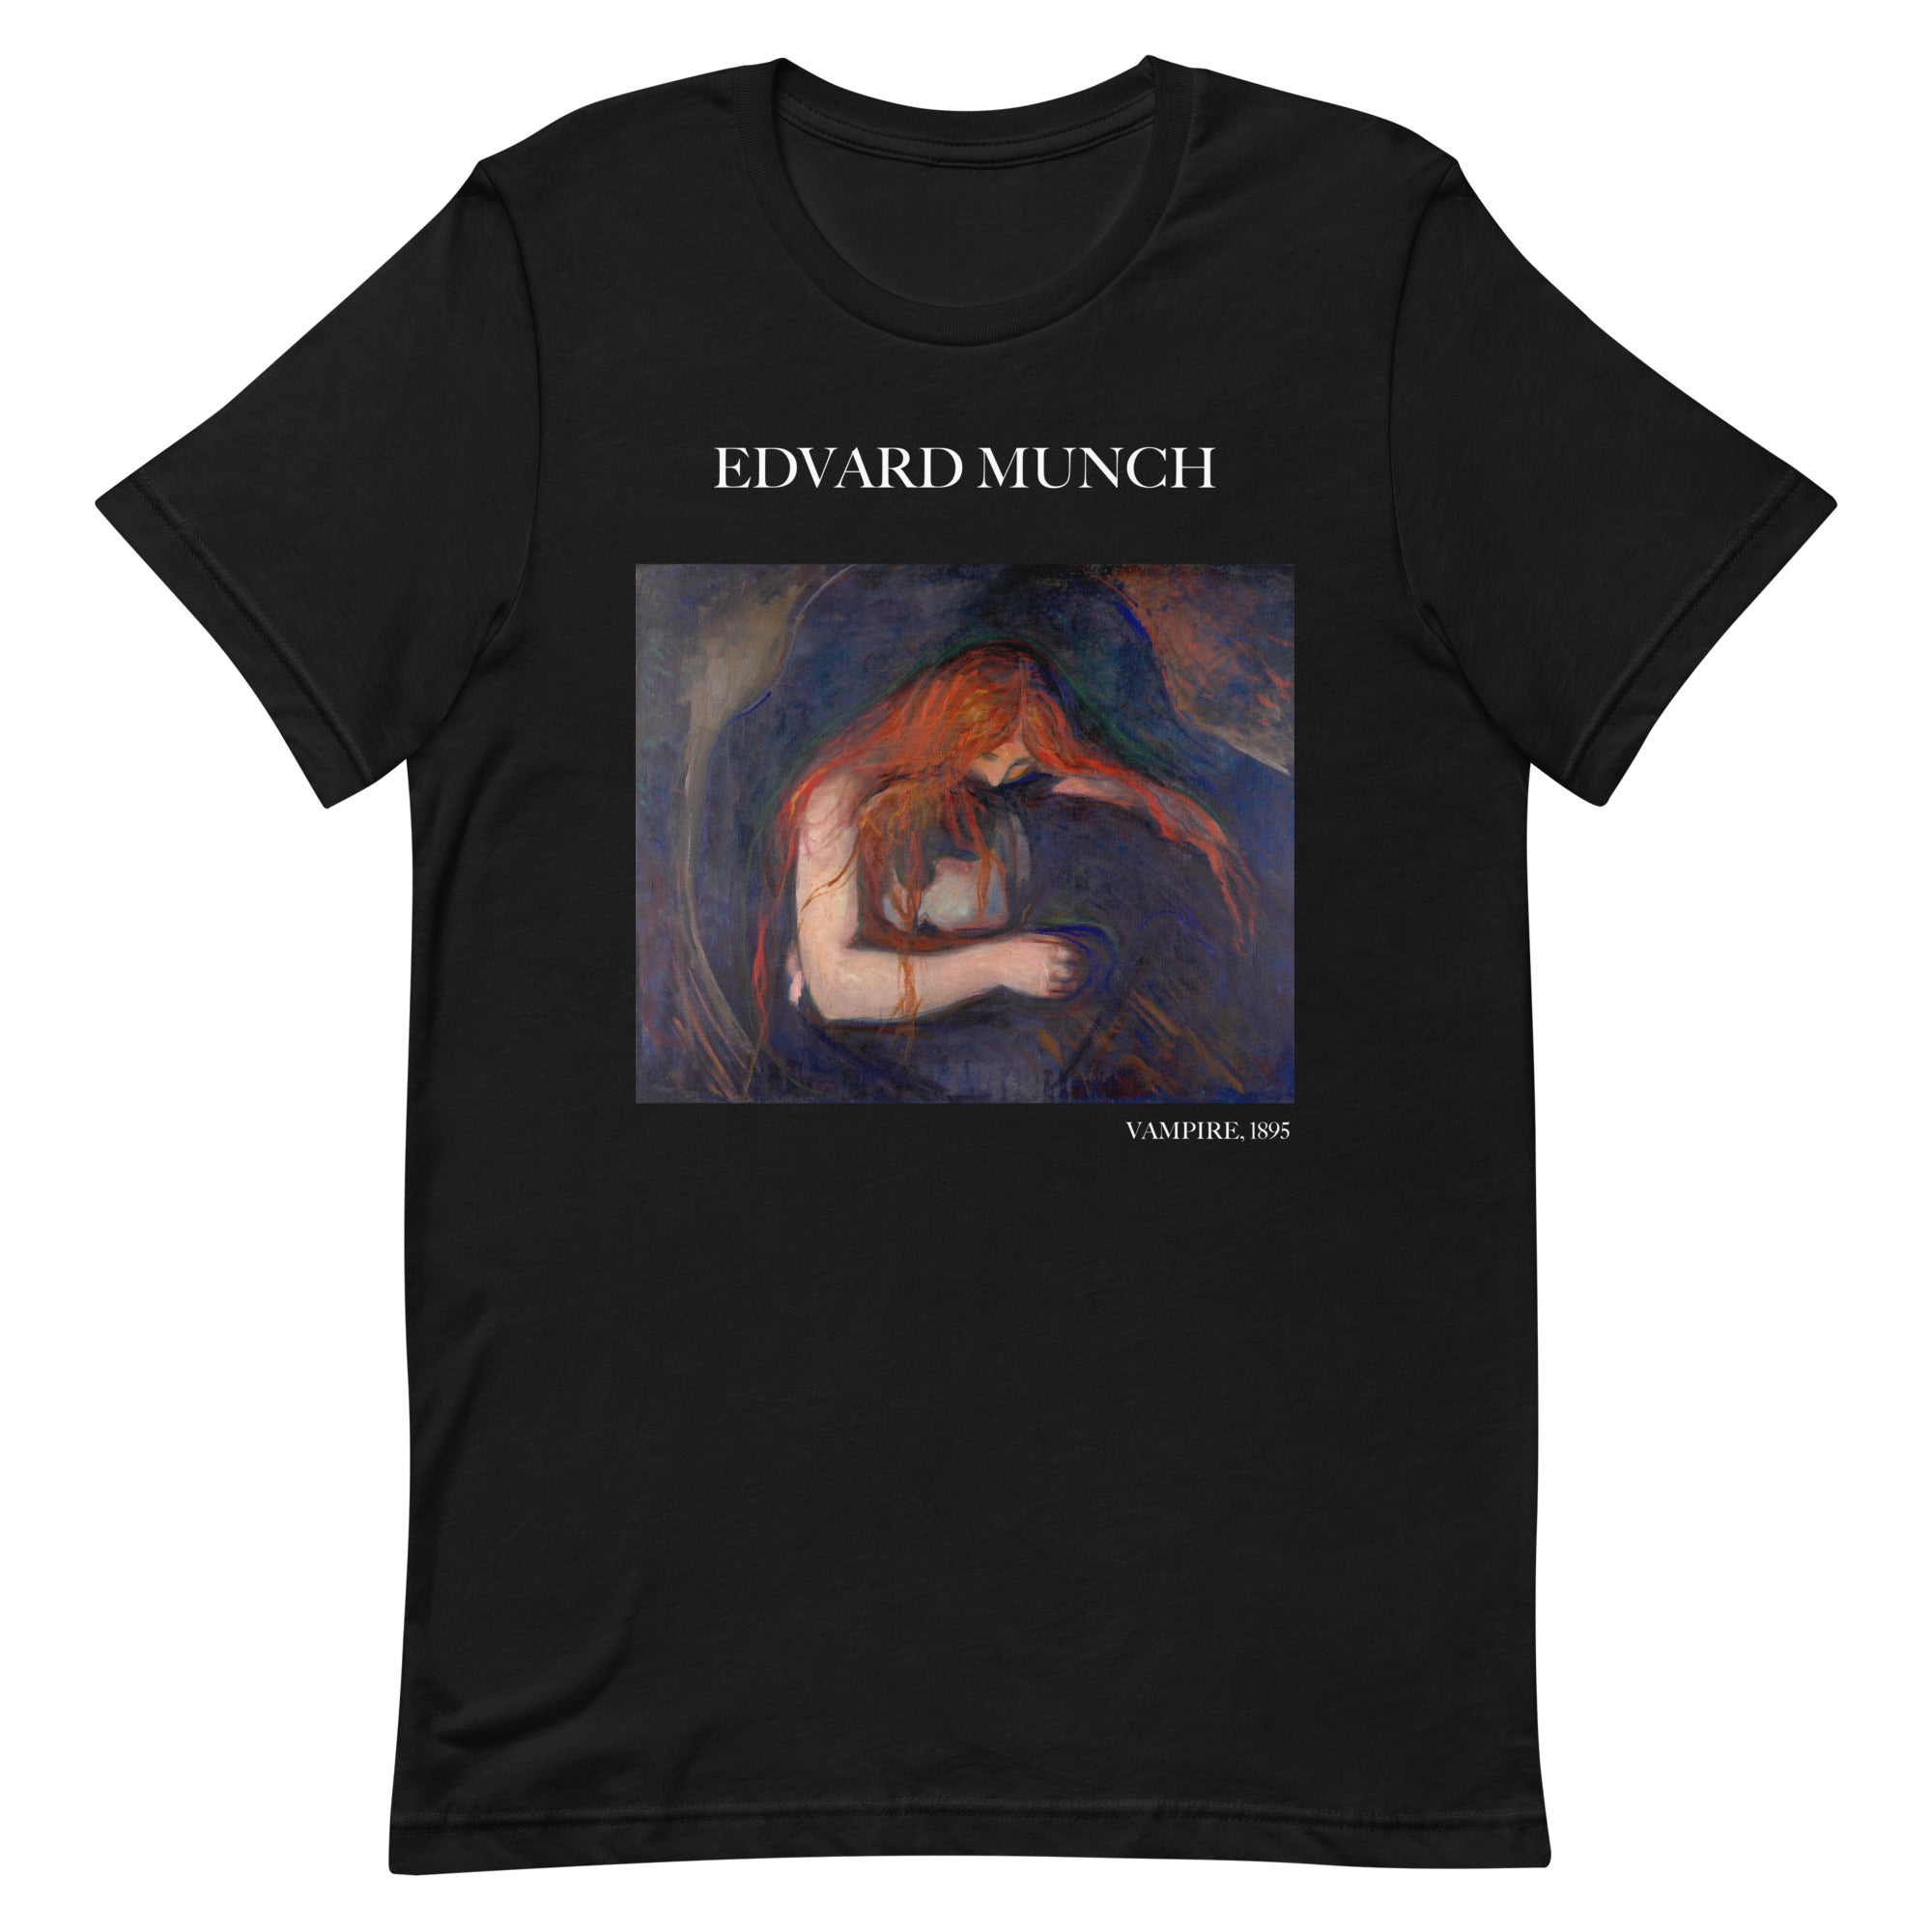 T-Shirt mit berühmtem Gemälde „Vampir“ von Edvard Munch | Unisex-T-Shirt im klassischen Kunststil